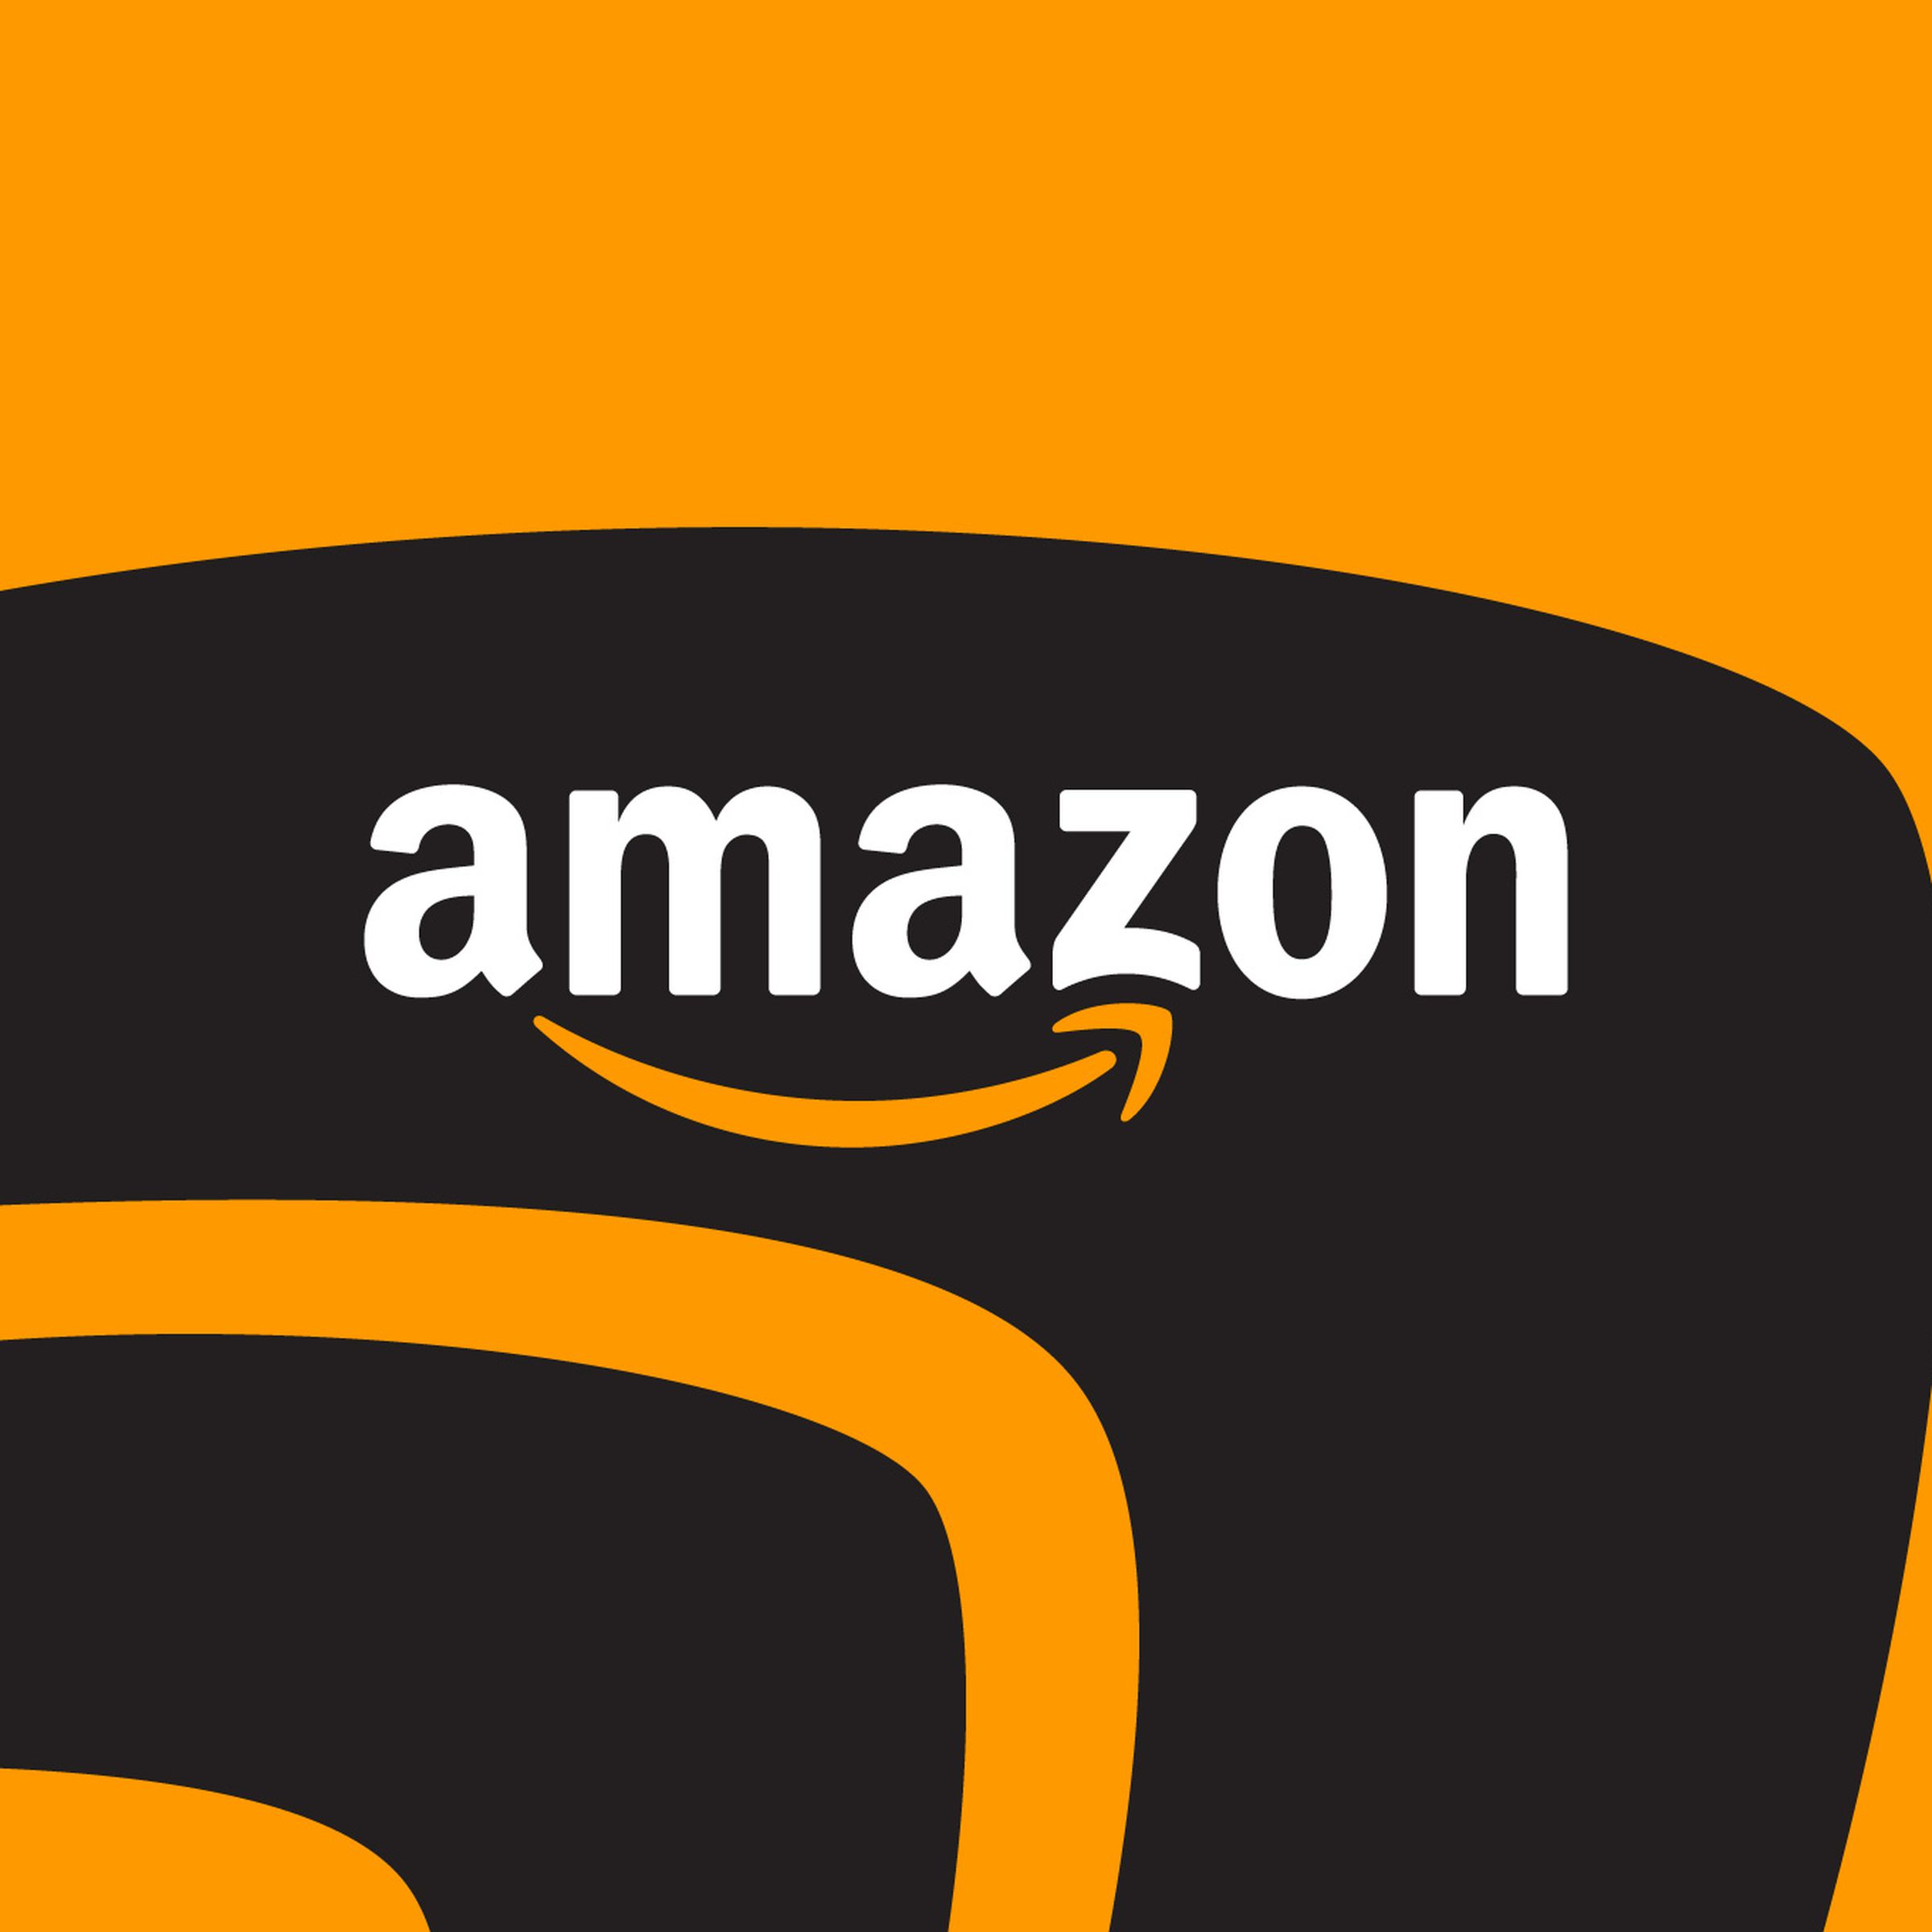 Illustration of the Amazon logo